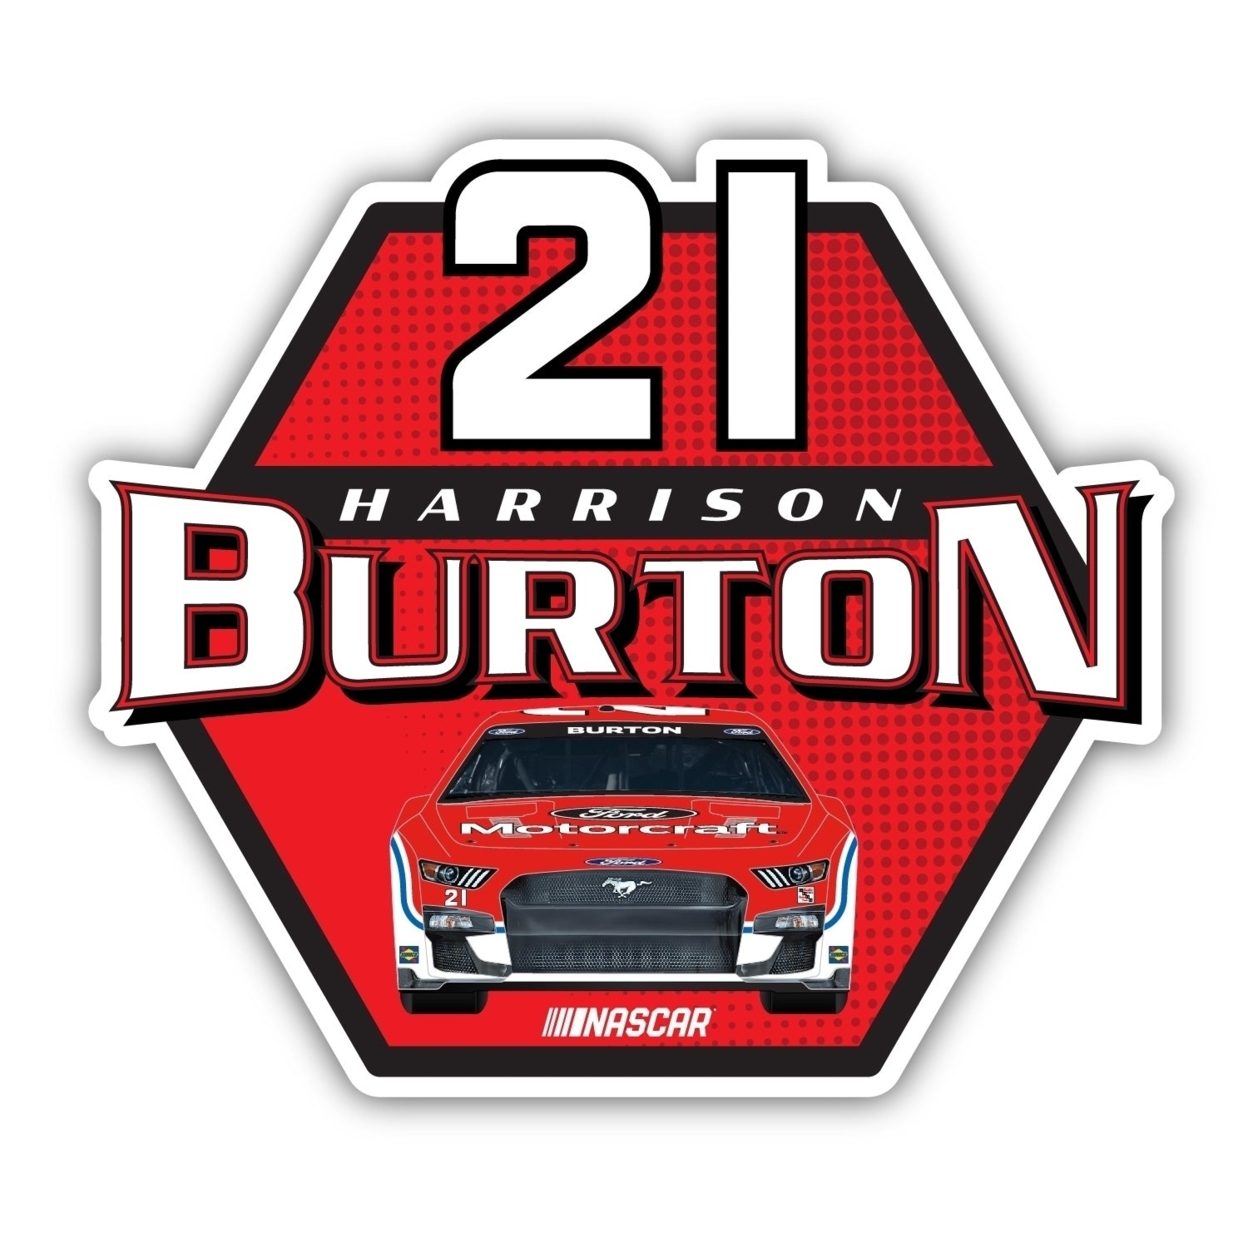 Harrison Burton #21 NASCAR Laser Cut Decal